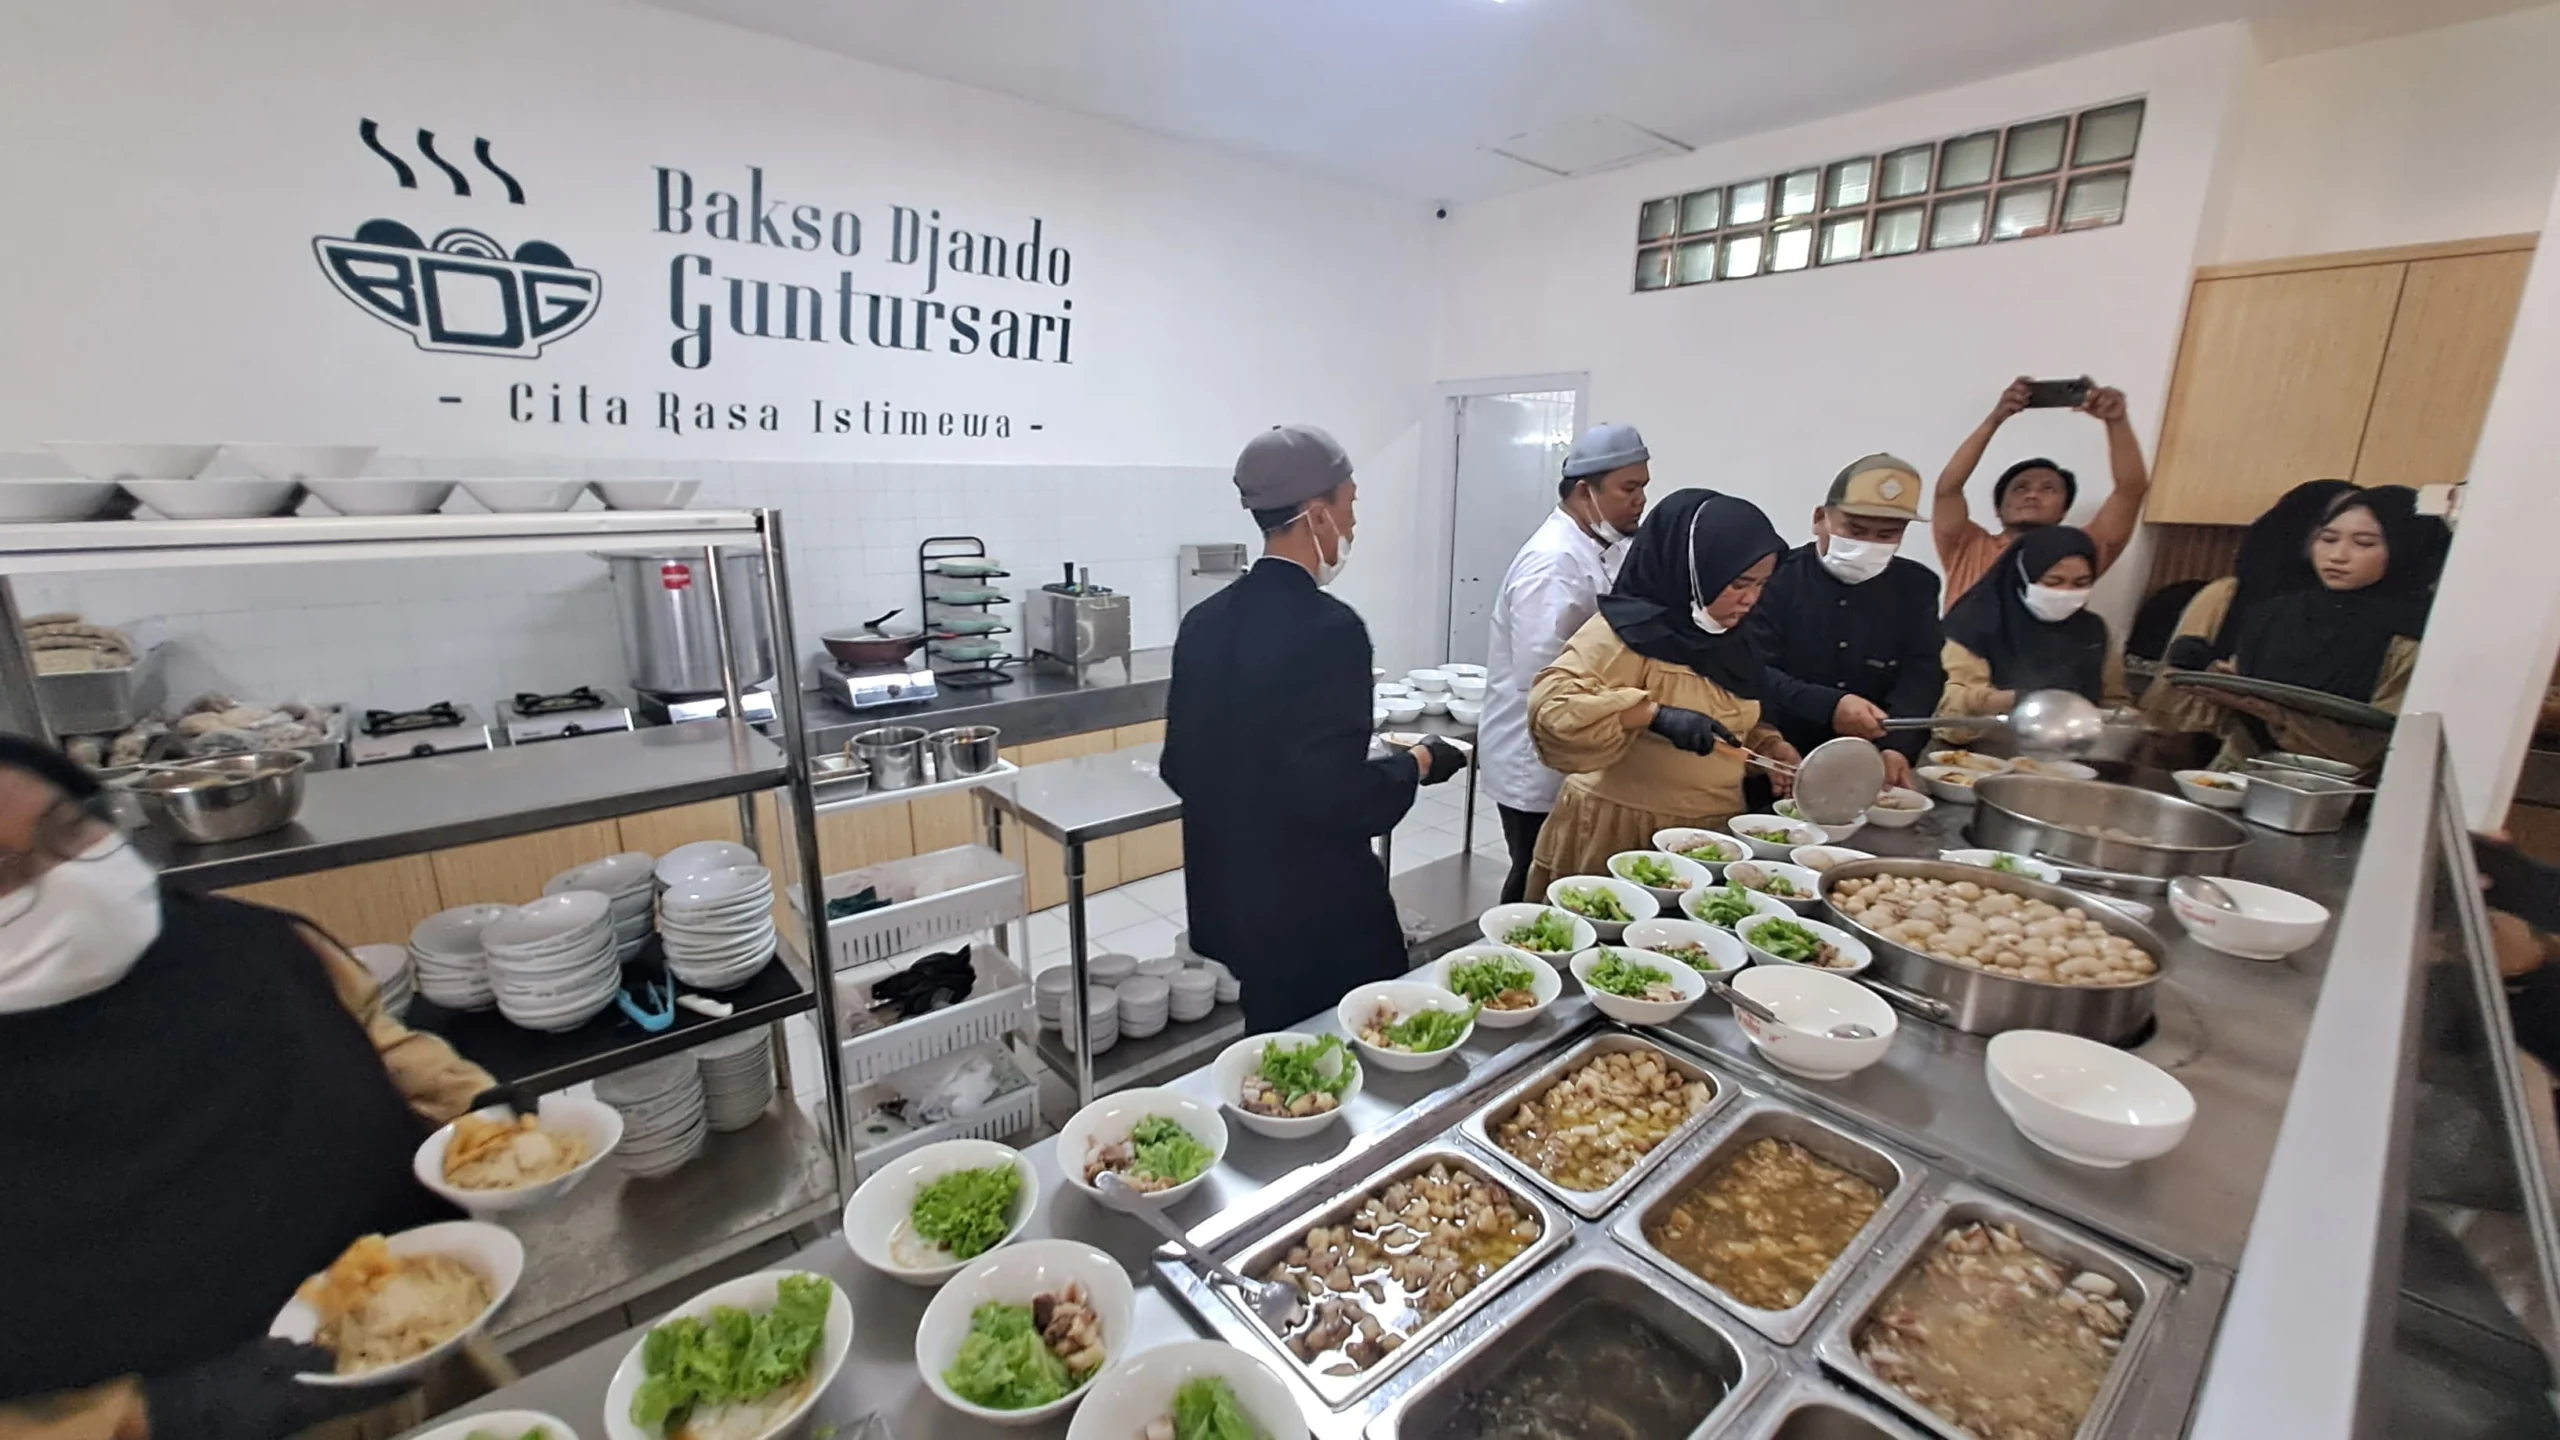 Sensasi Makan Bakso Terenak, Hanya Ada di Bakso Djando Guntursari Bandung